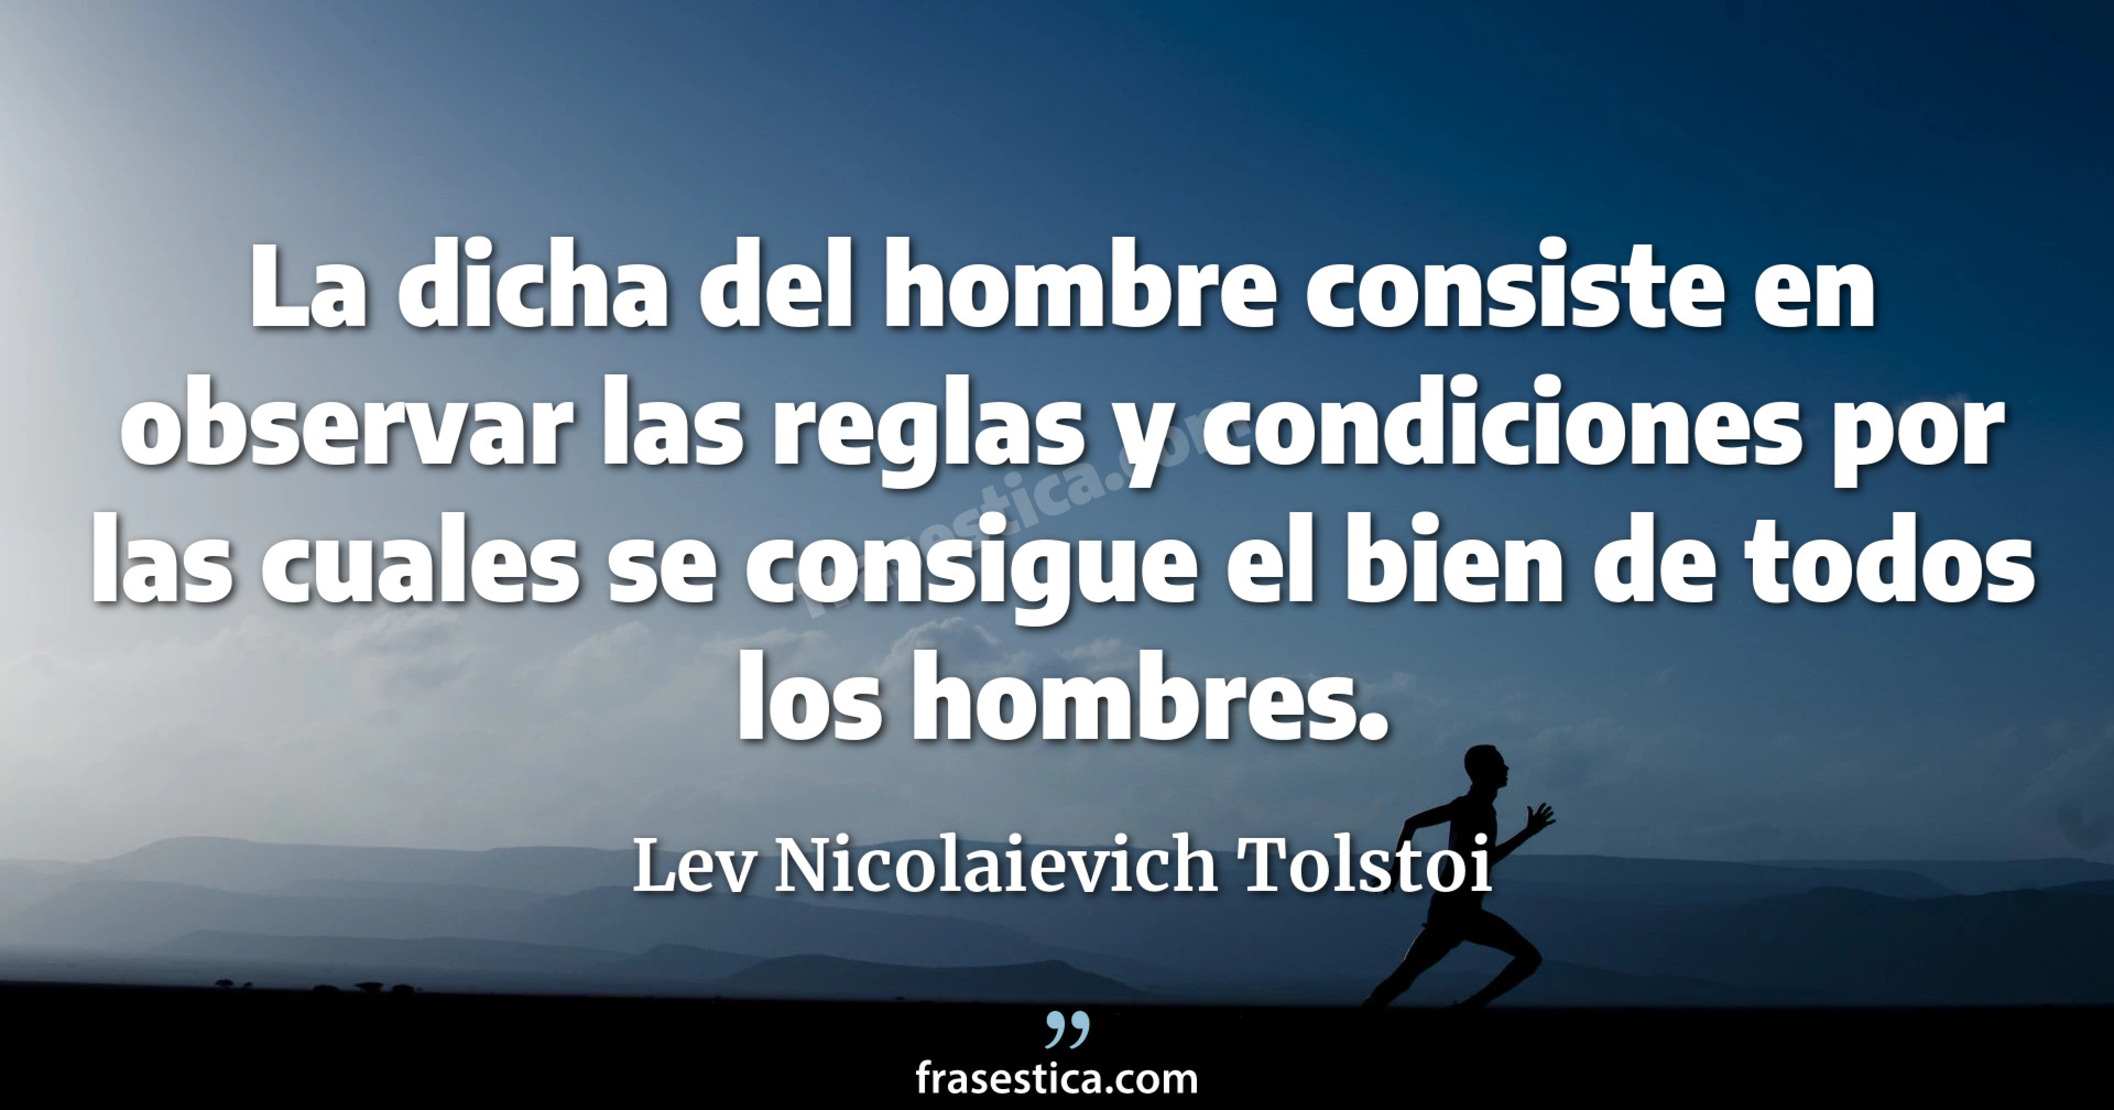 La dicha del hombre consiste en observar las reglas y condiciones por las cuales se consigue el bien de todos los hombres. - Lev Nicolaievich Tolstoi